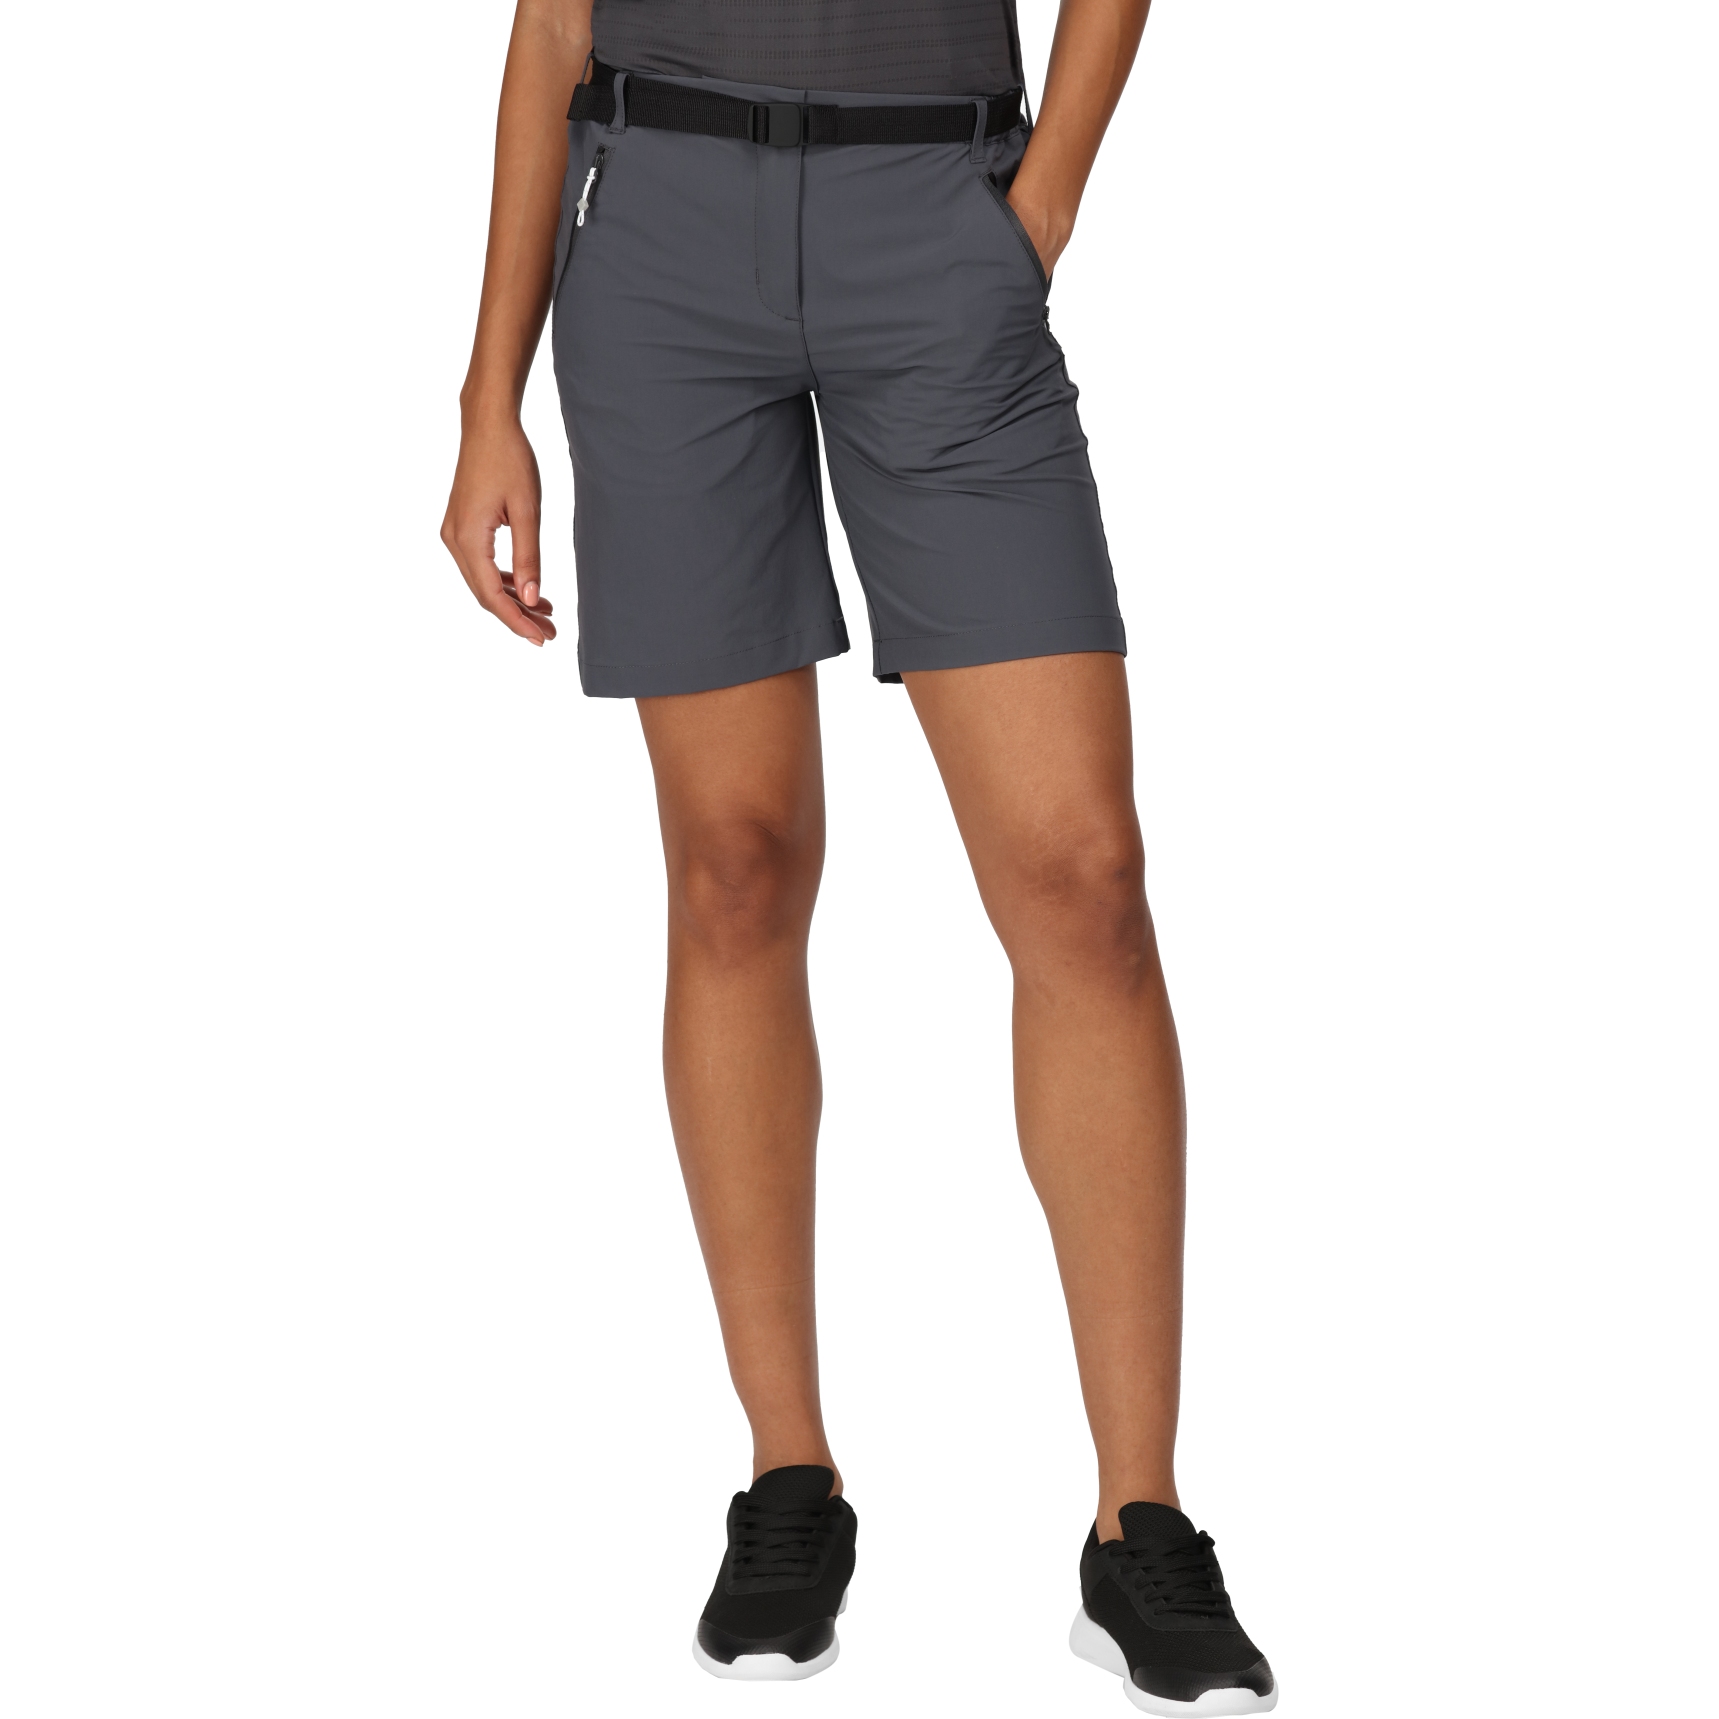 Produktbild von Regatta Xert Stretch Shorts III Damen - Seal Grey 038